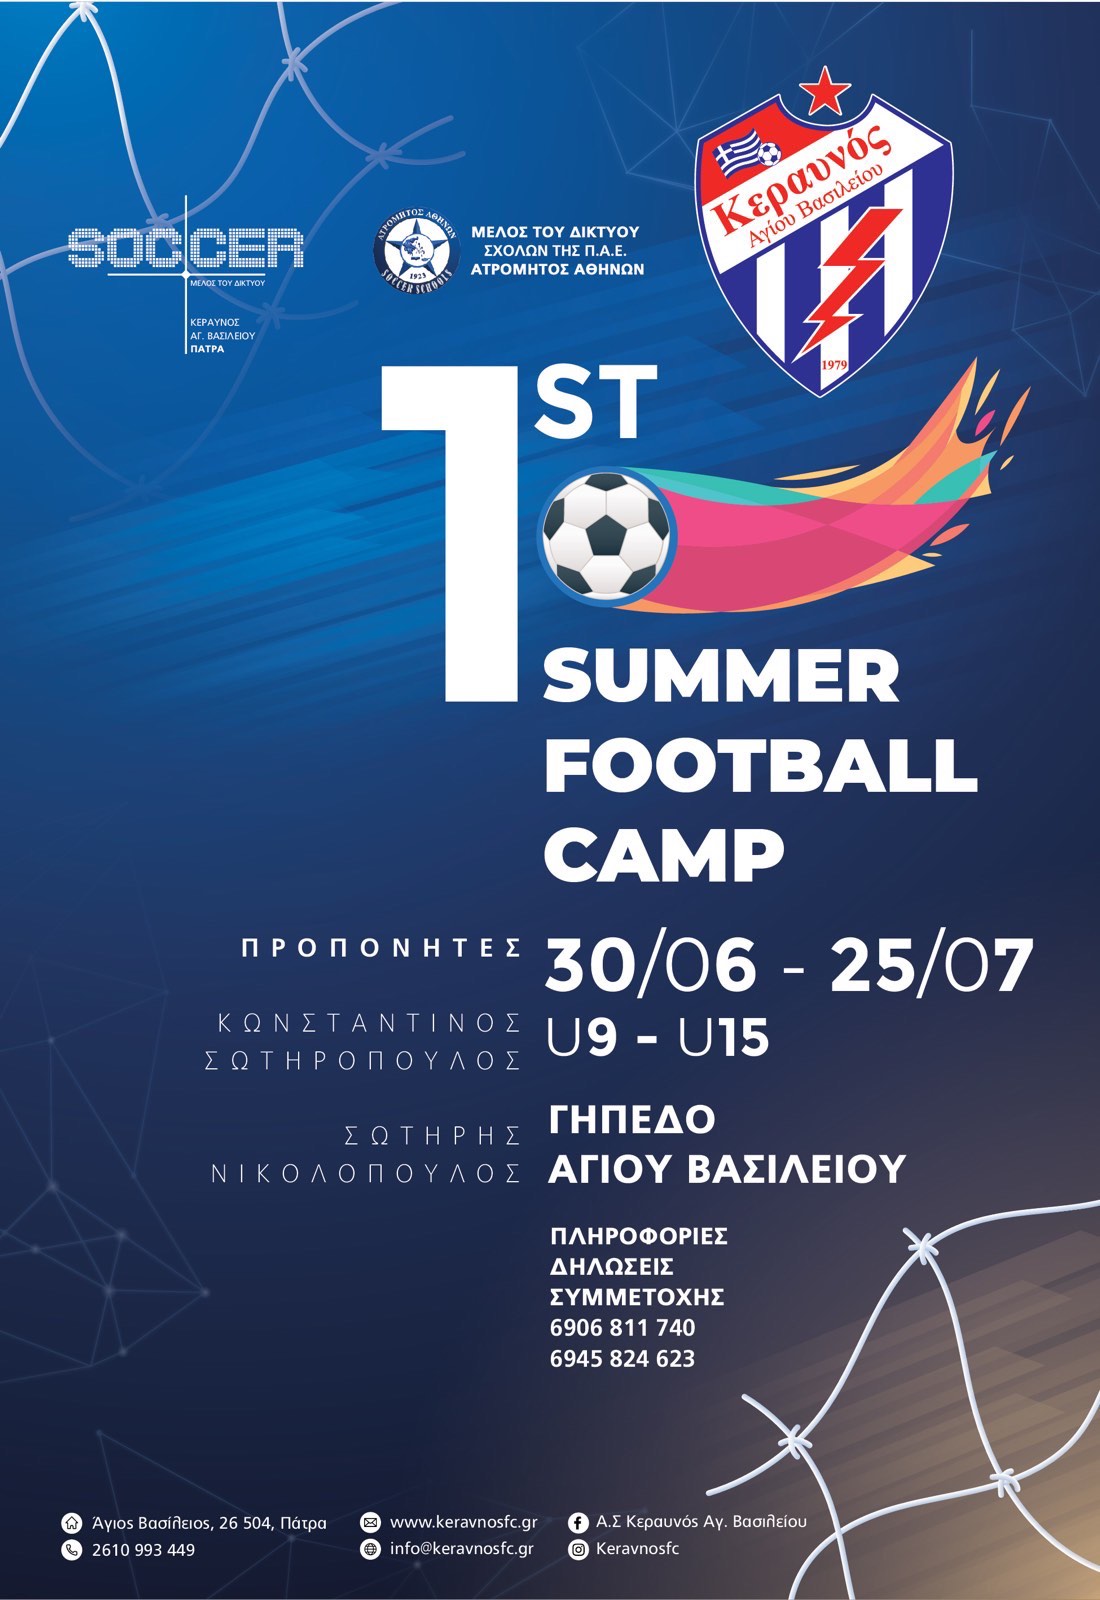 Κεραυνός Αγίου Βασιλείου: Διοργανώνει το 1st Summer Football Camp